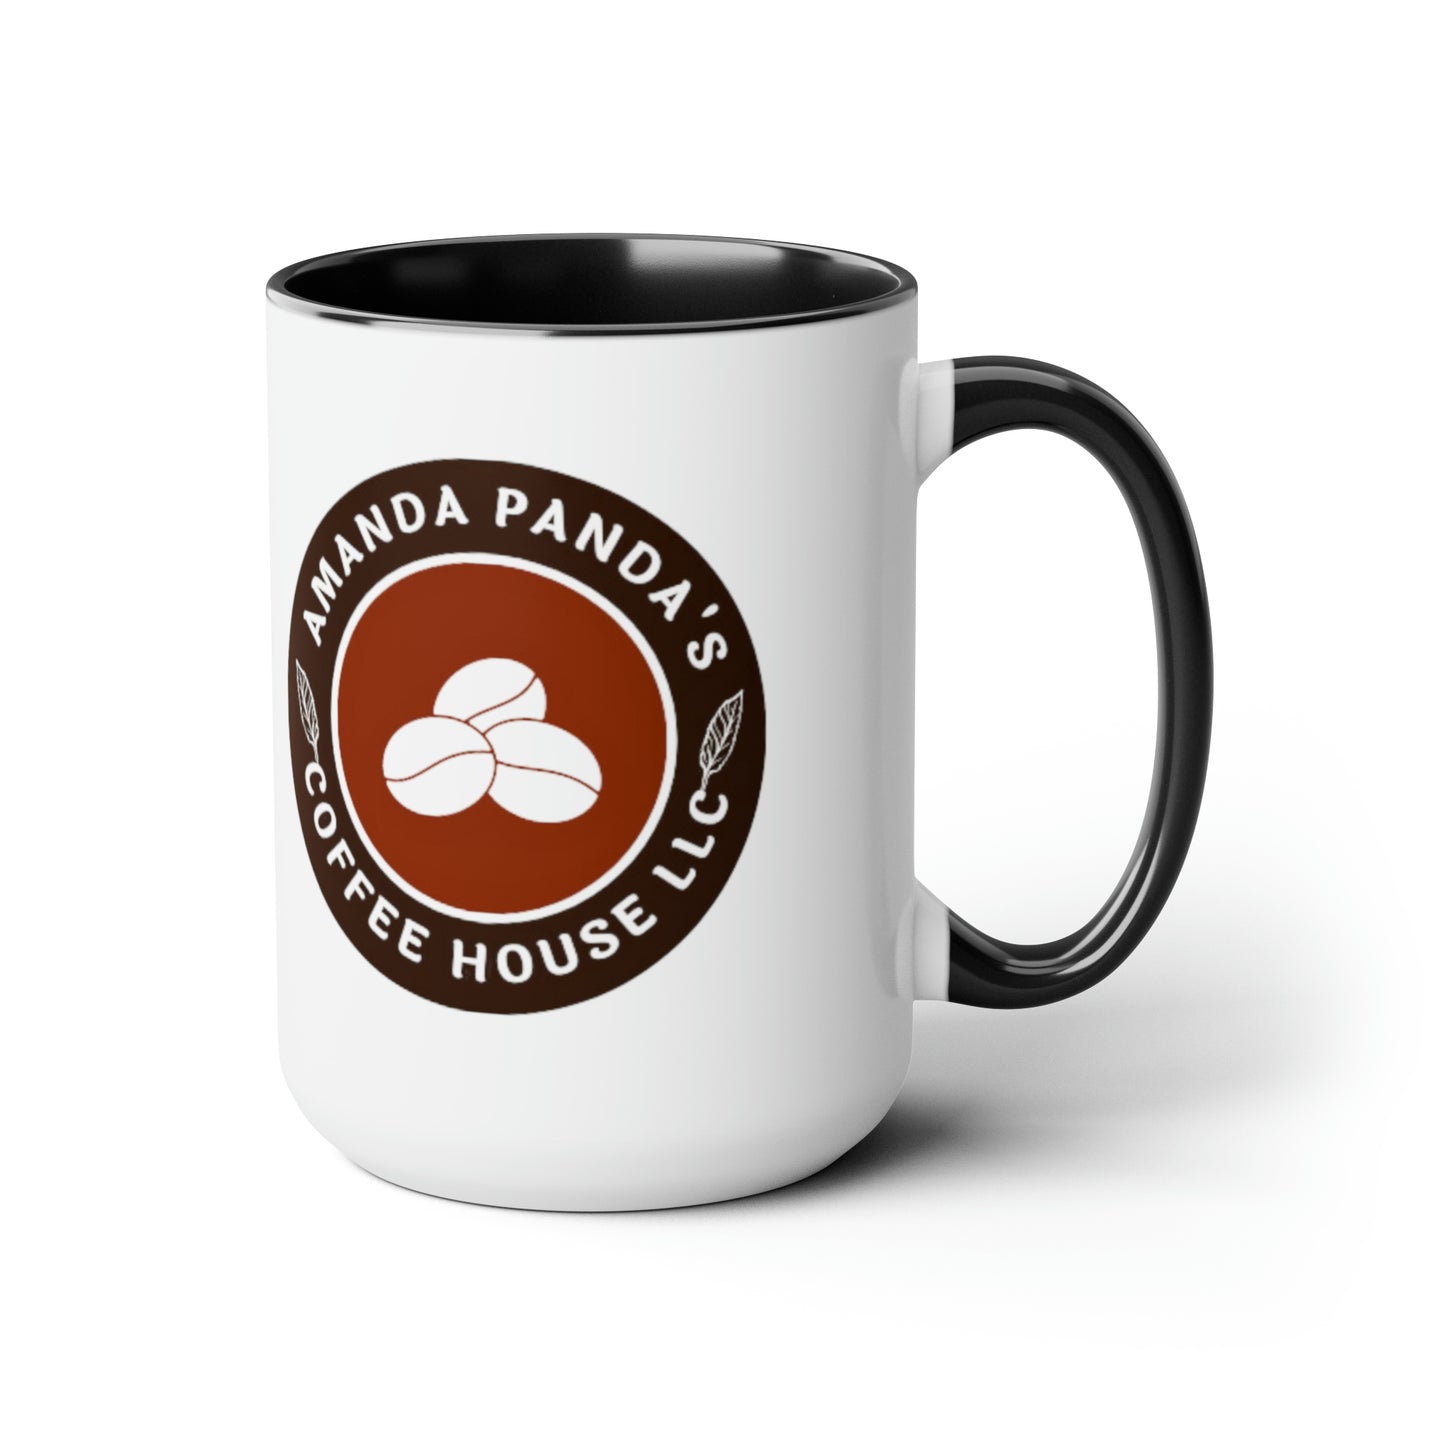 Amanda Pandas Coffee House LLC V1 Tazas de café, 15 oz